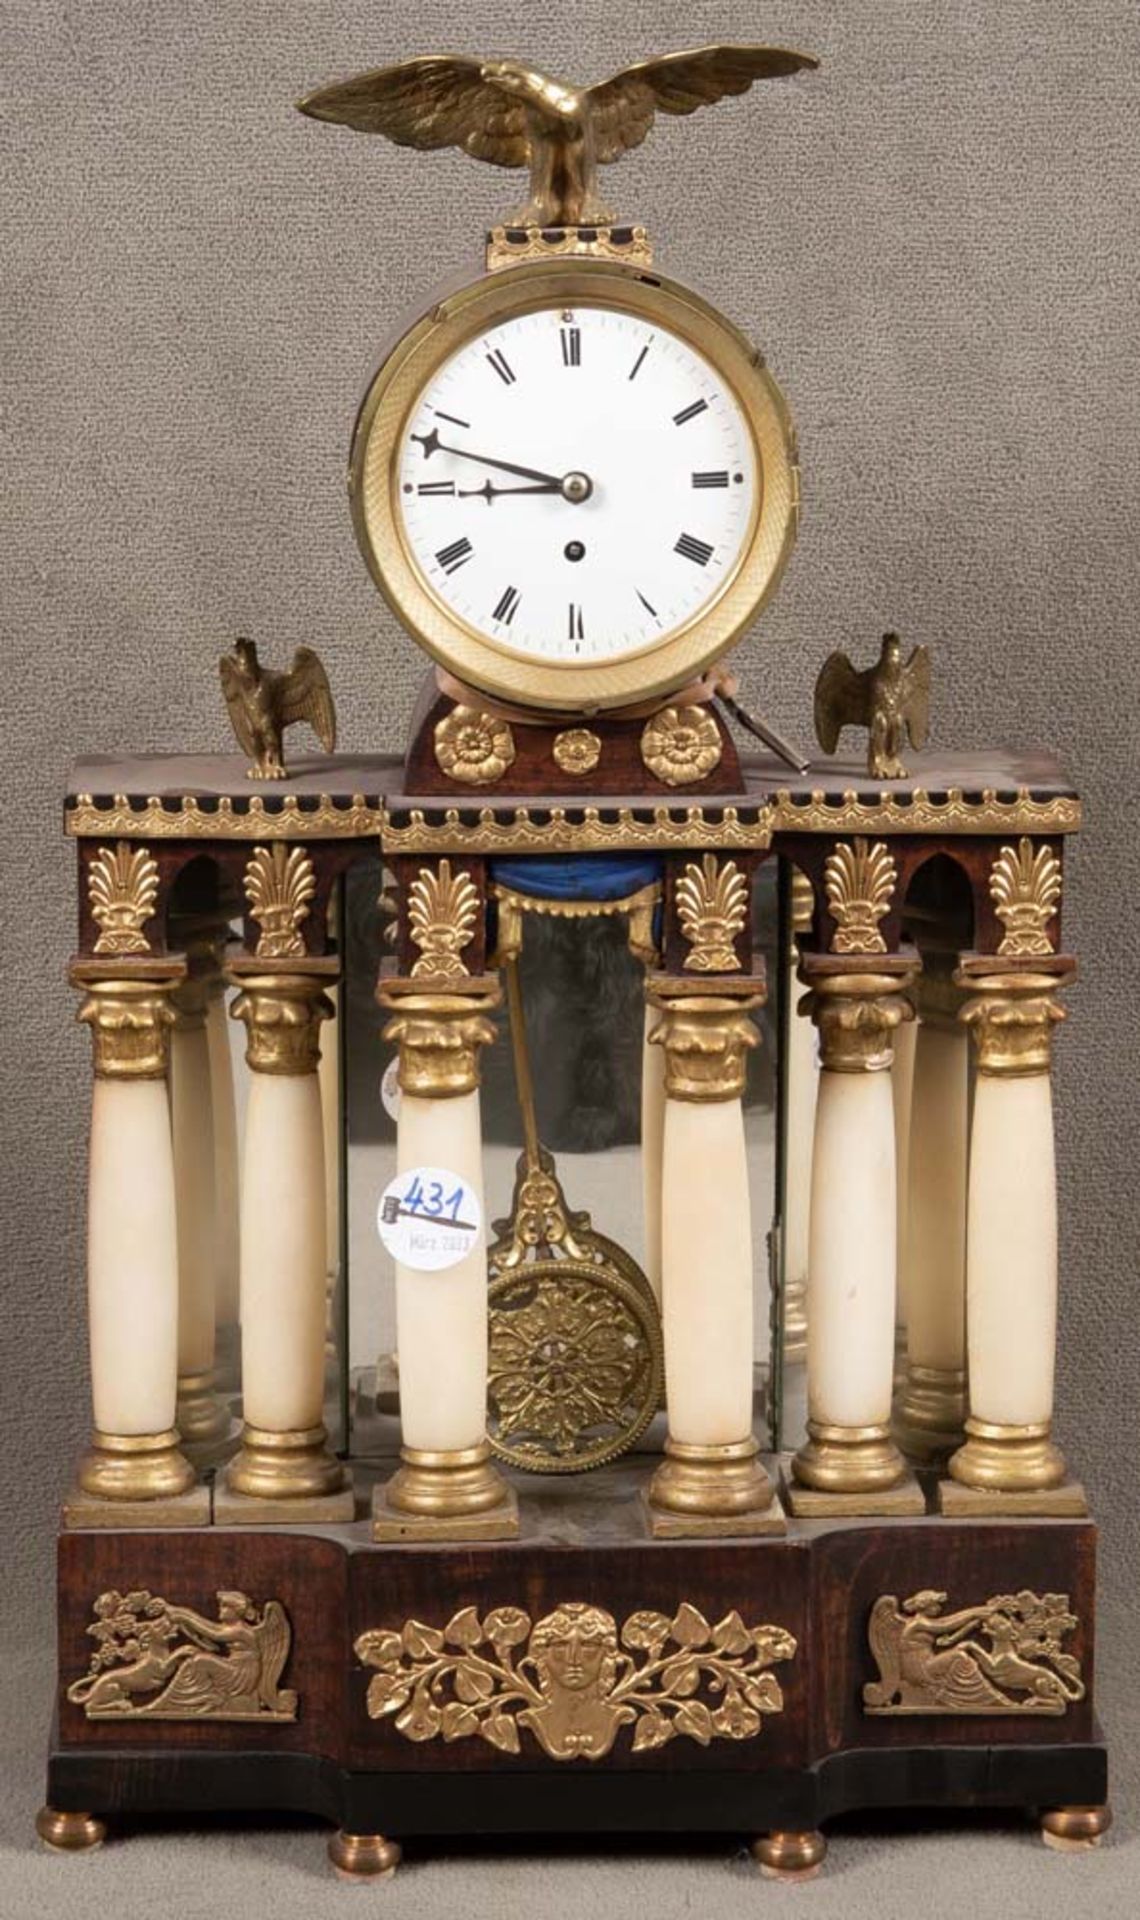 Biedermeier-Portaluhr. Wien 19. Jh. Nussbaumfurnier, mit Alabastersäulen, rundes Uhrengehäuse mit